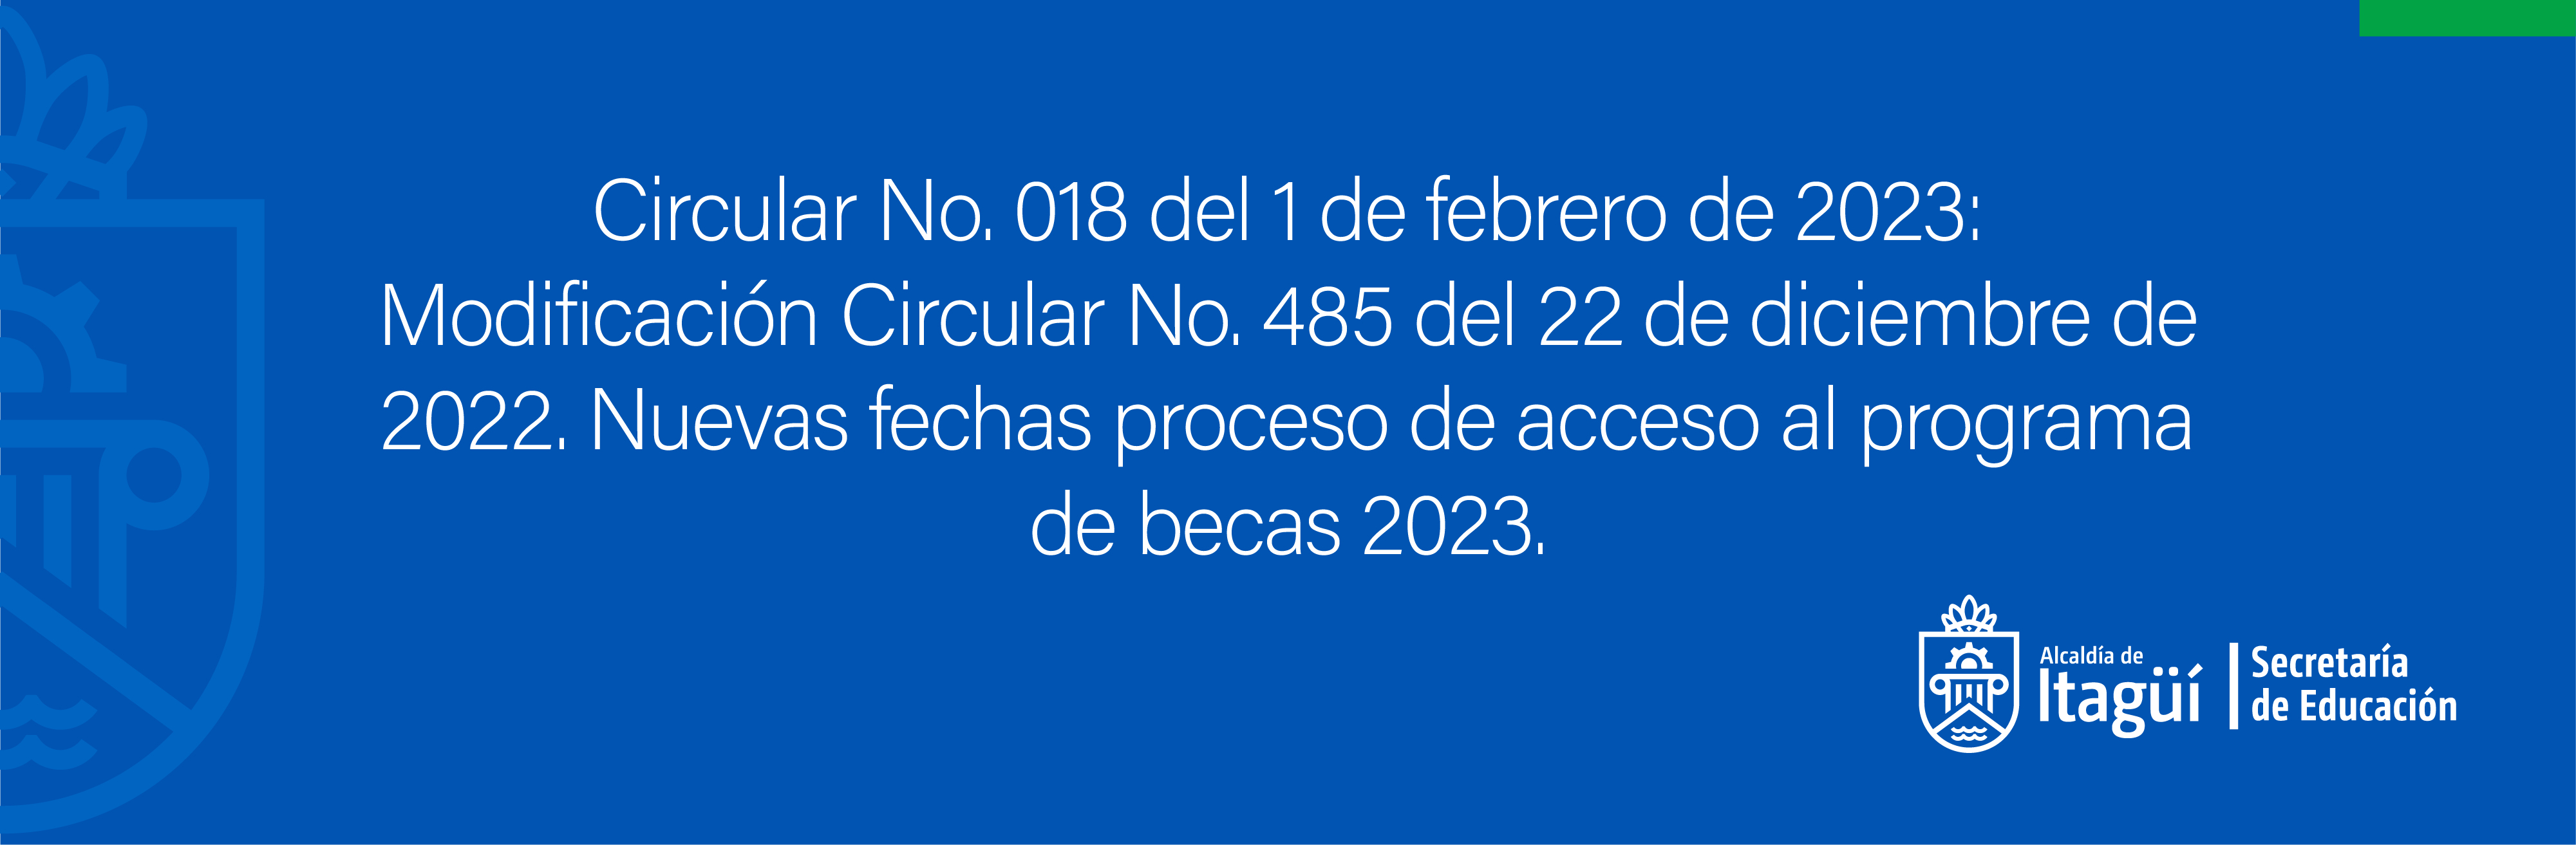 Circular No. 018 del 1 de febrero de 2023: Modificación Circular No. 485 del 22 de diciembre de 2022. Nuevas fechas proceso de acceso al programa de becas 2023.